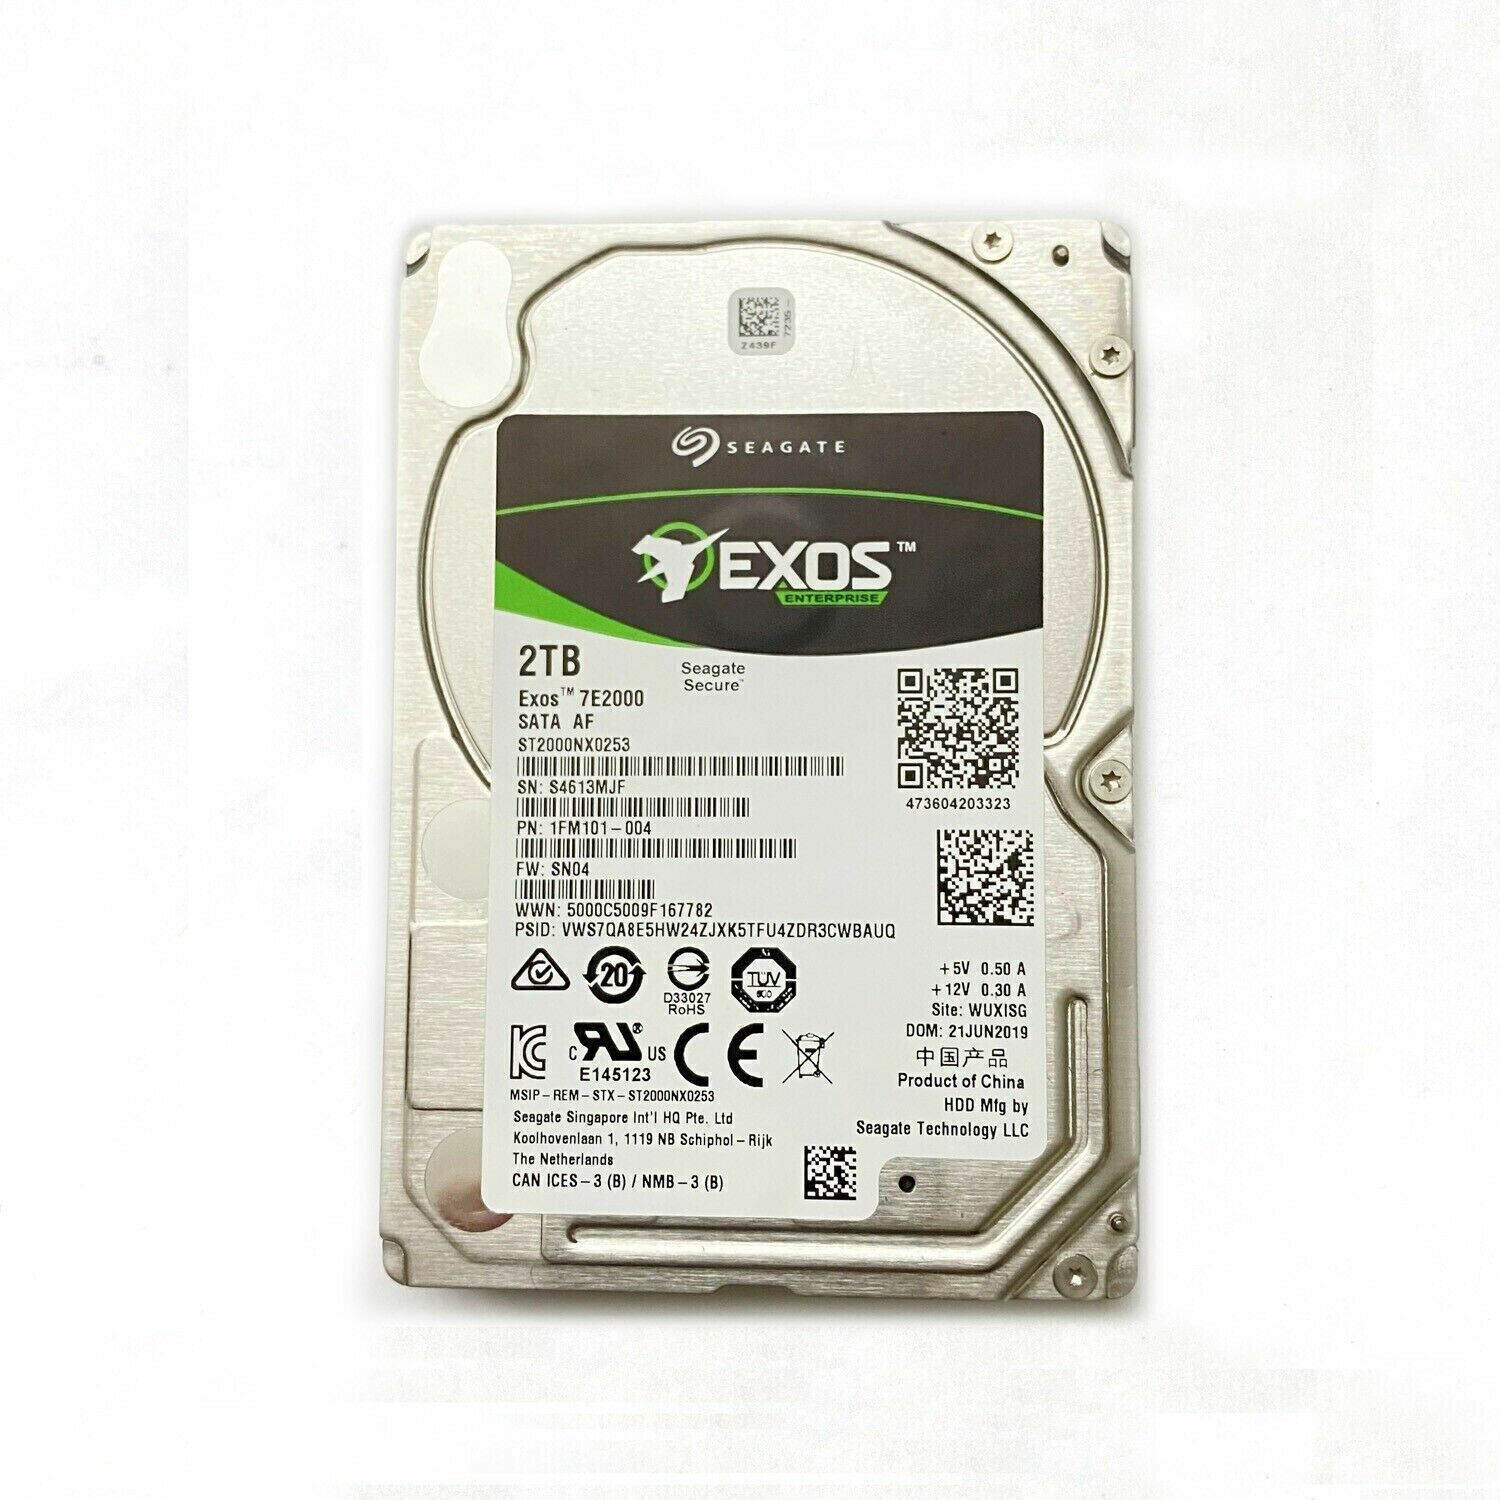 ST ST2000NX0253 Exos 7E2000 2TB SATA 6Gb/s 7200 RPM 2.5” Hard Drive HDD